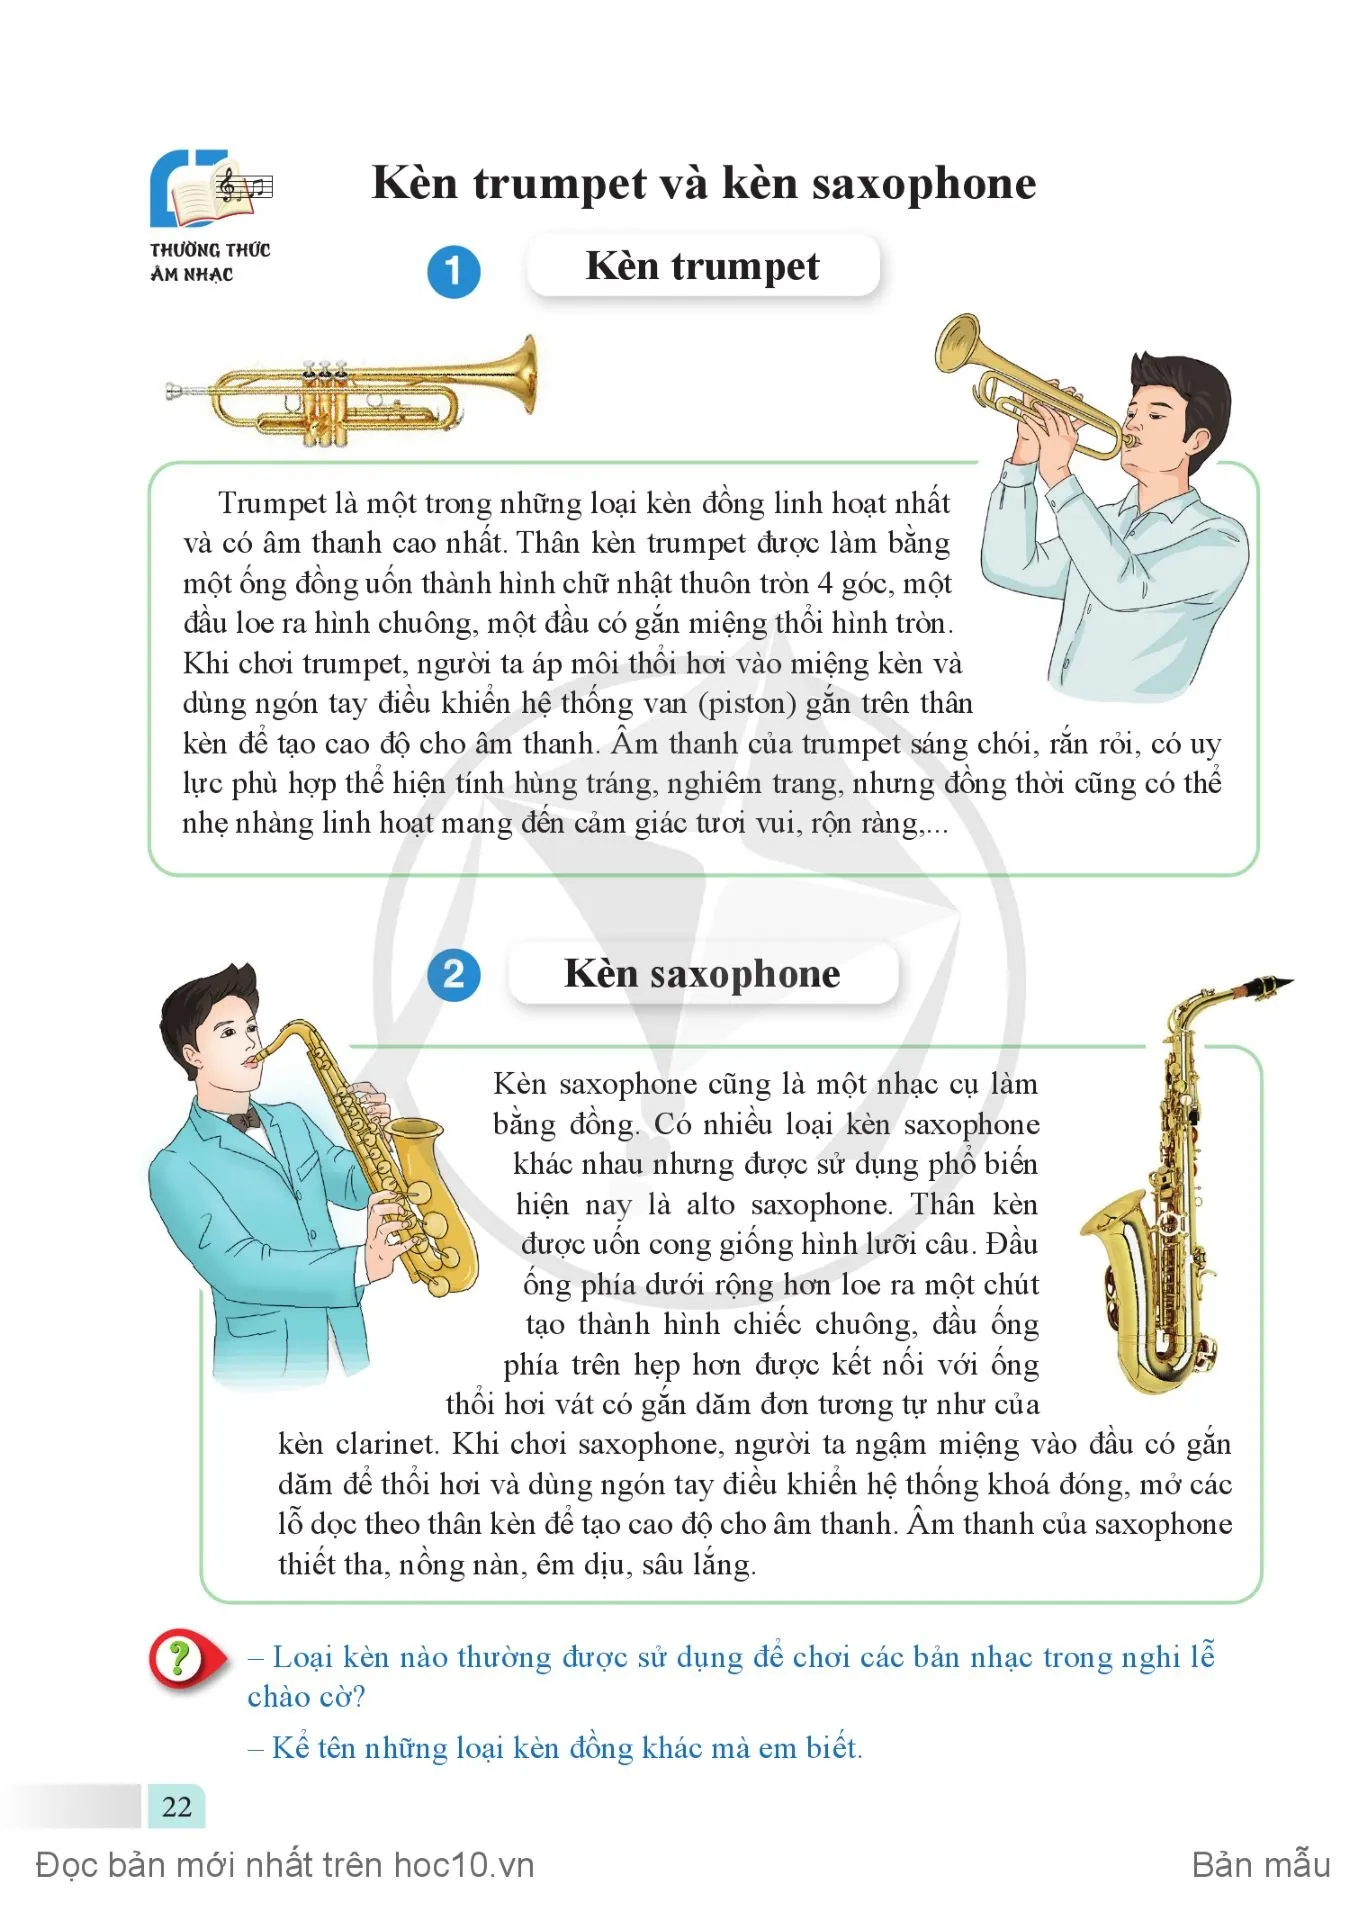 • Thường thức âm nhạc: Kèn trumpet và kèn saxophone